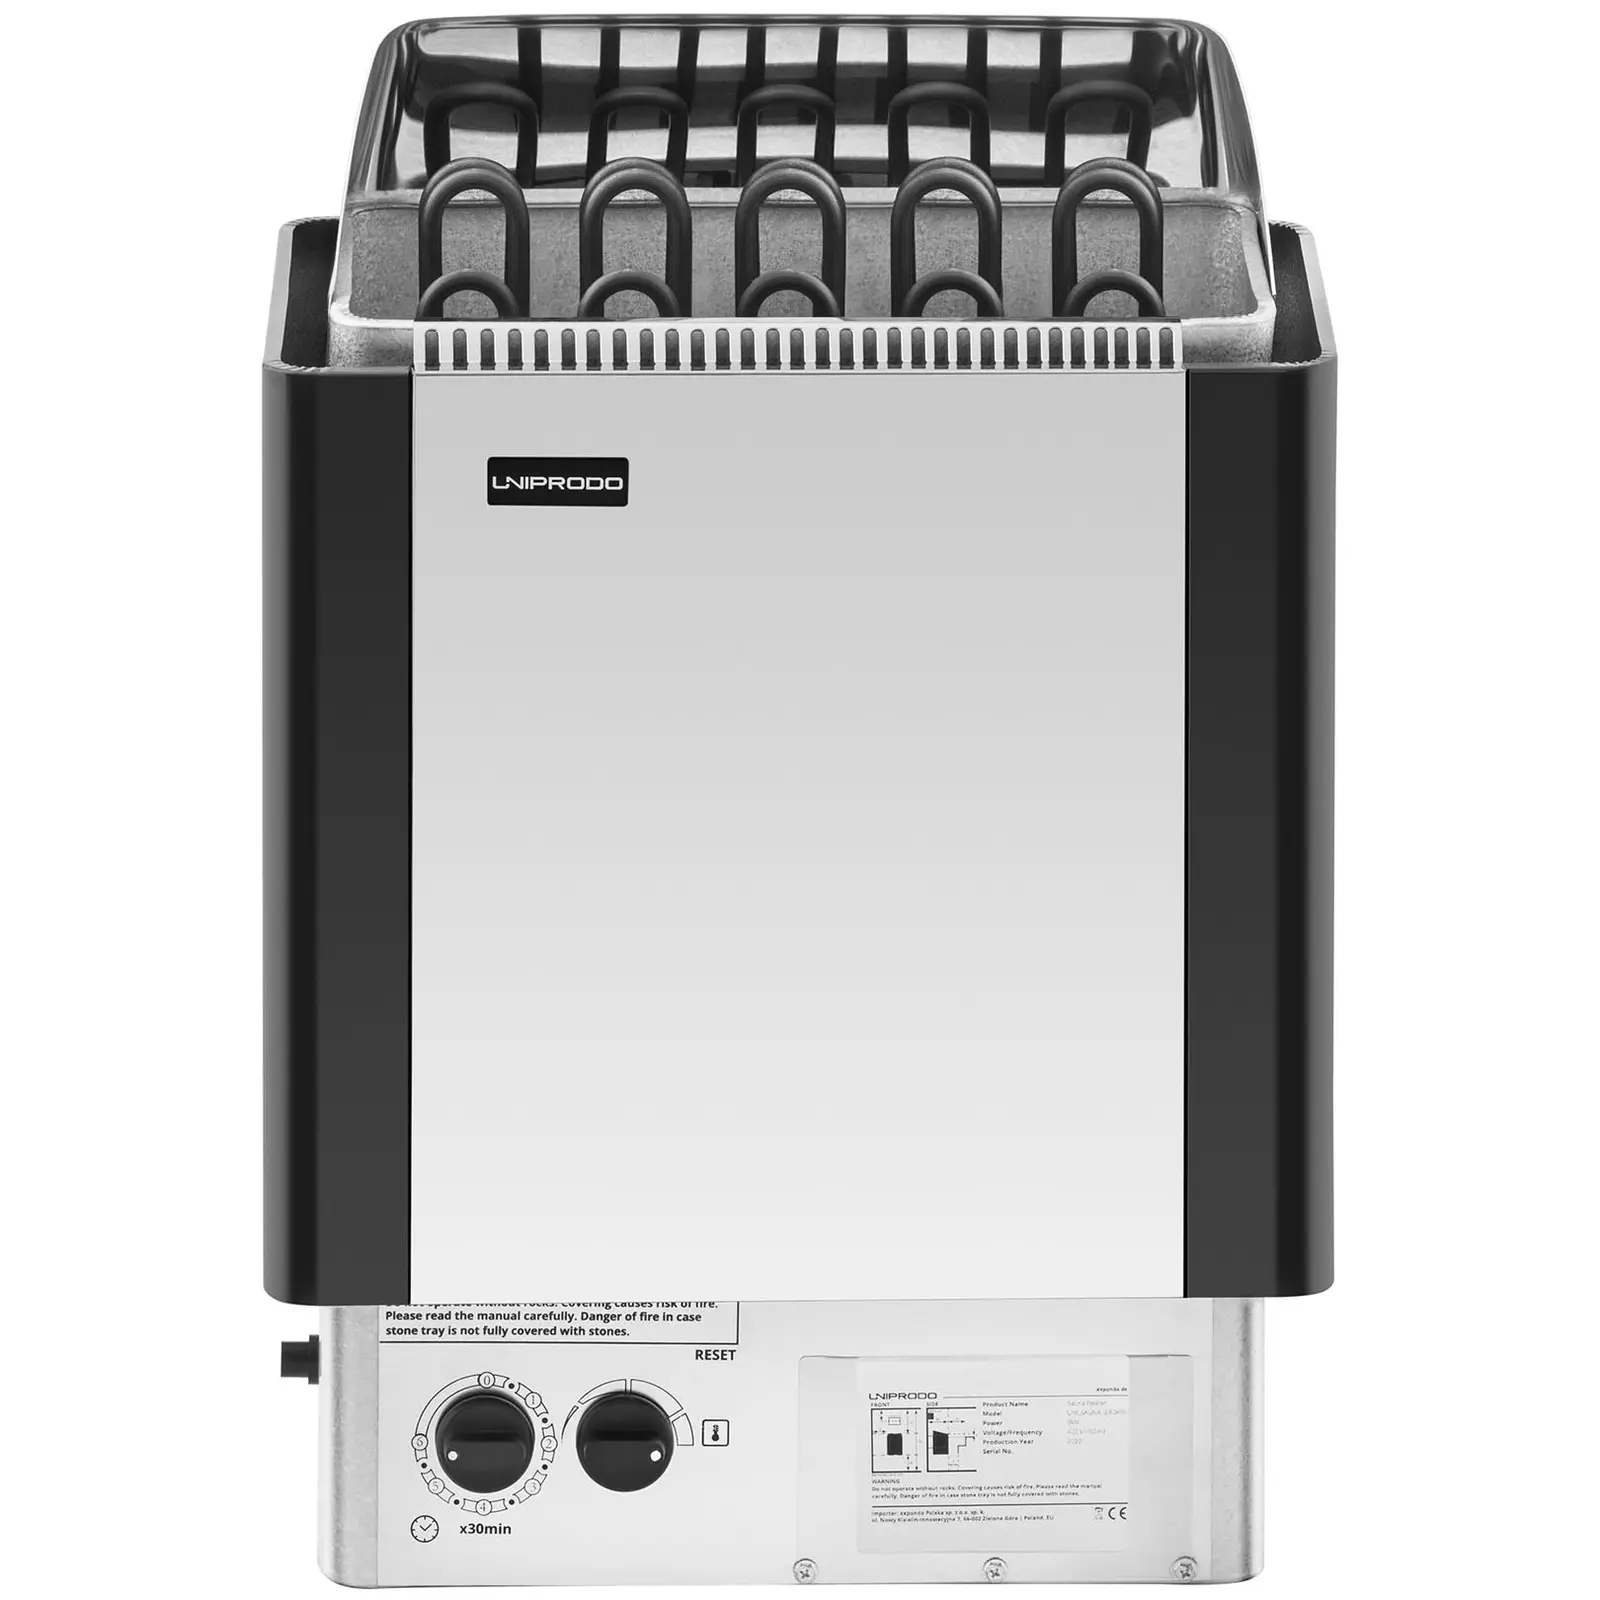 Saunaofen - 9 kW - 30 bis 110 °C - inkl. Steuerung